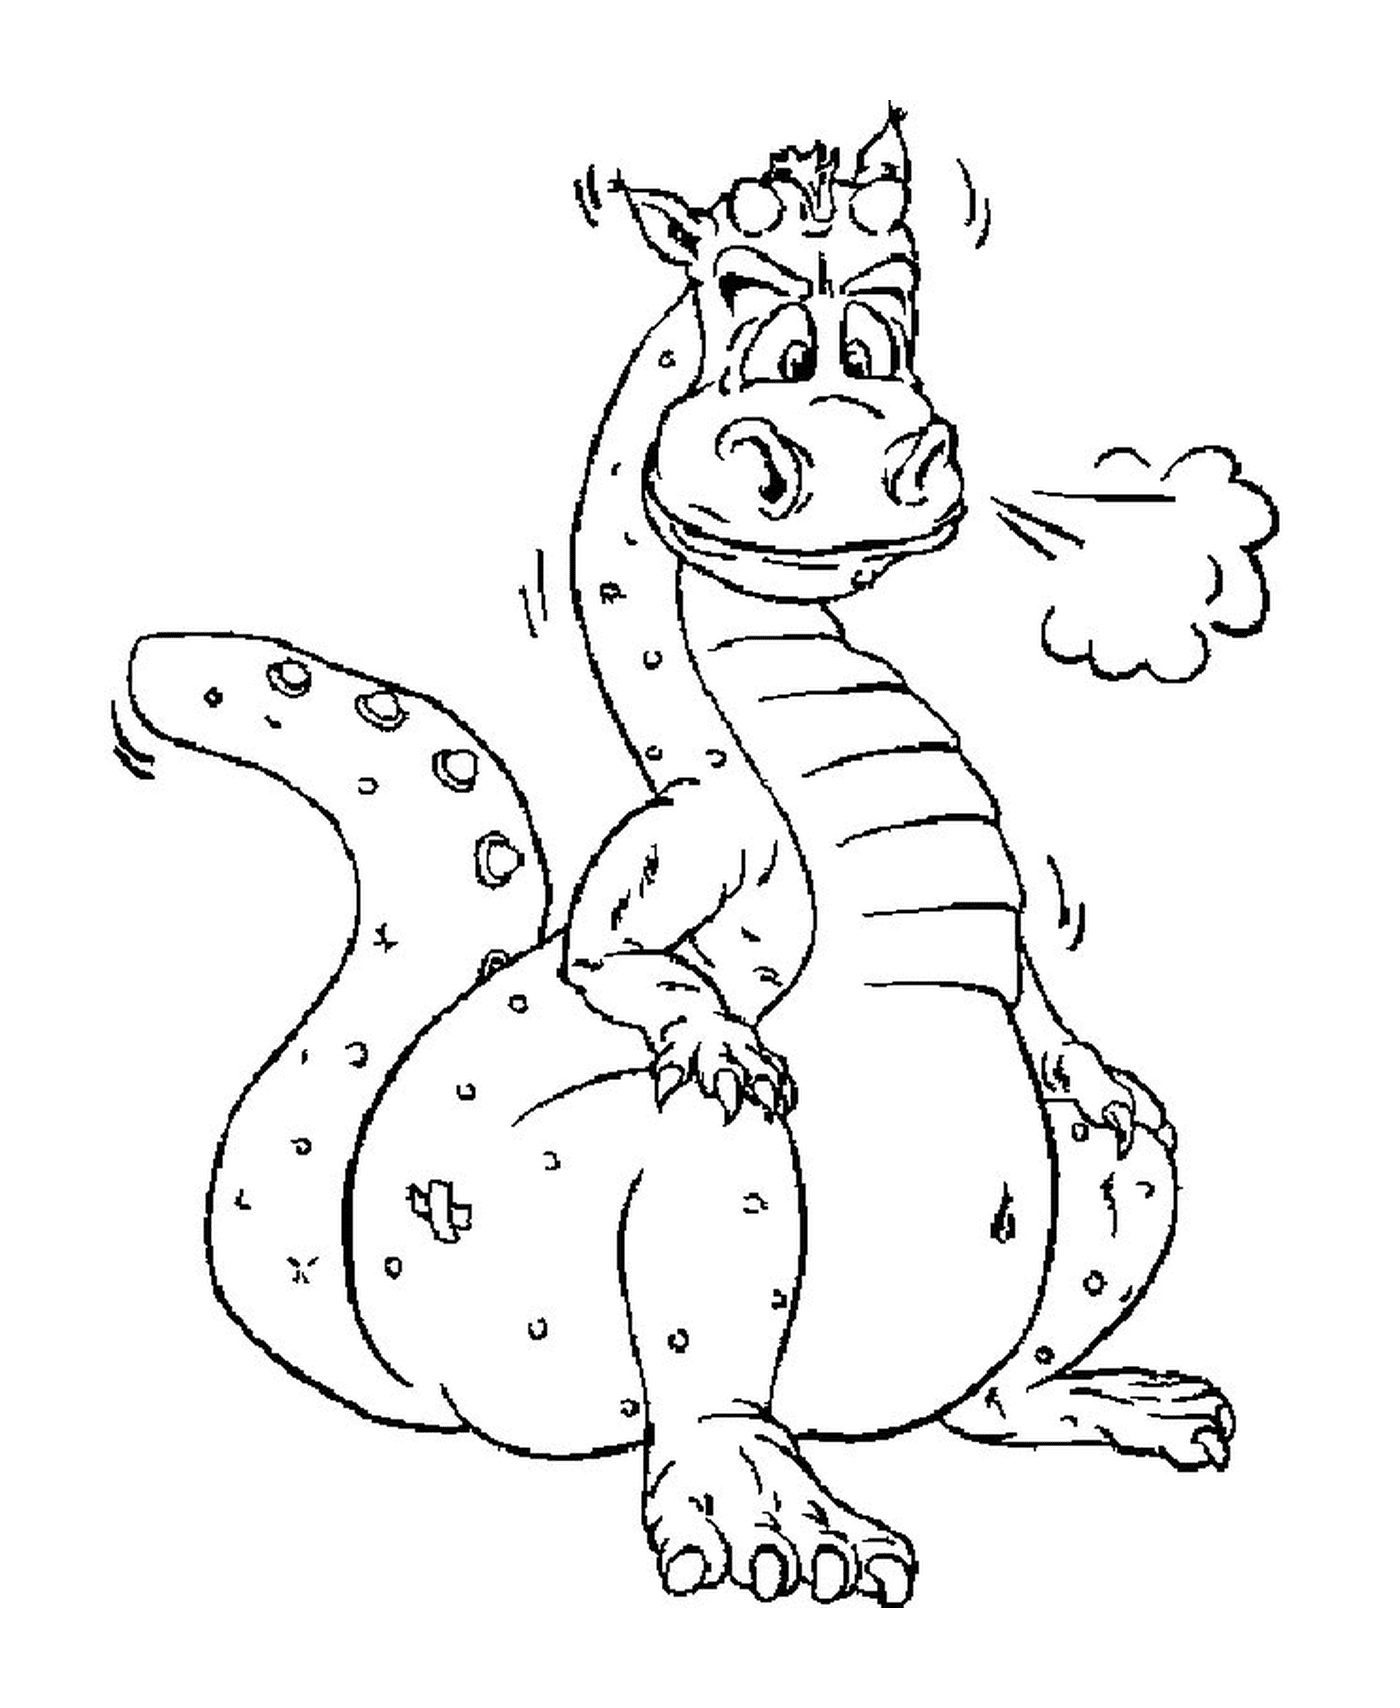   Un dragon crachant de la fumée 